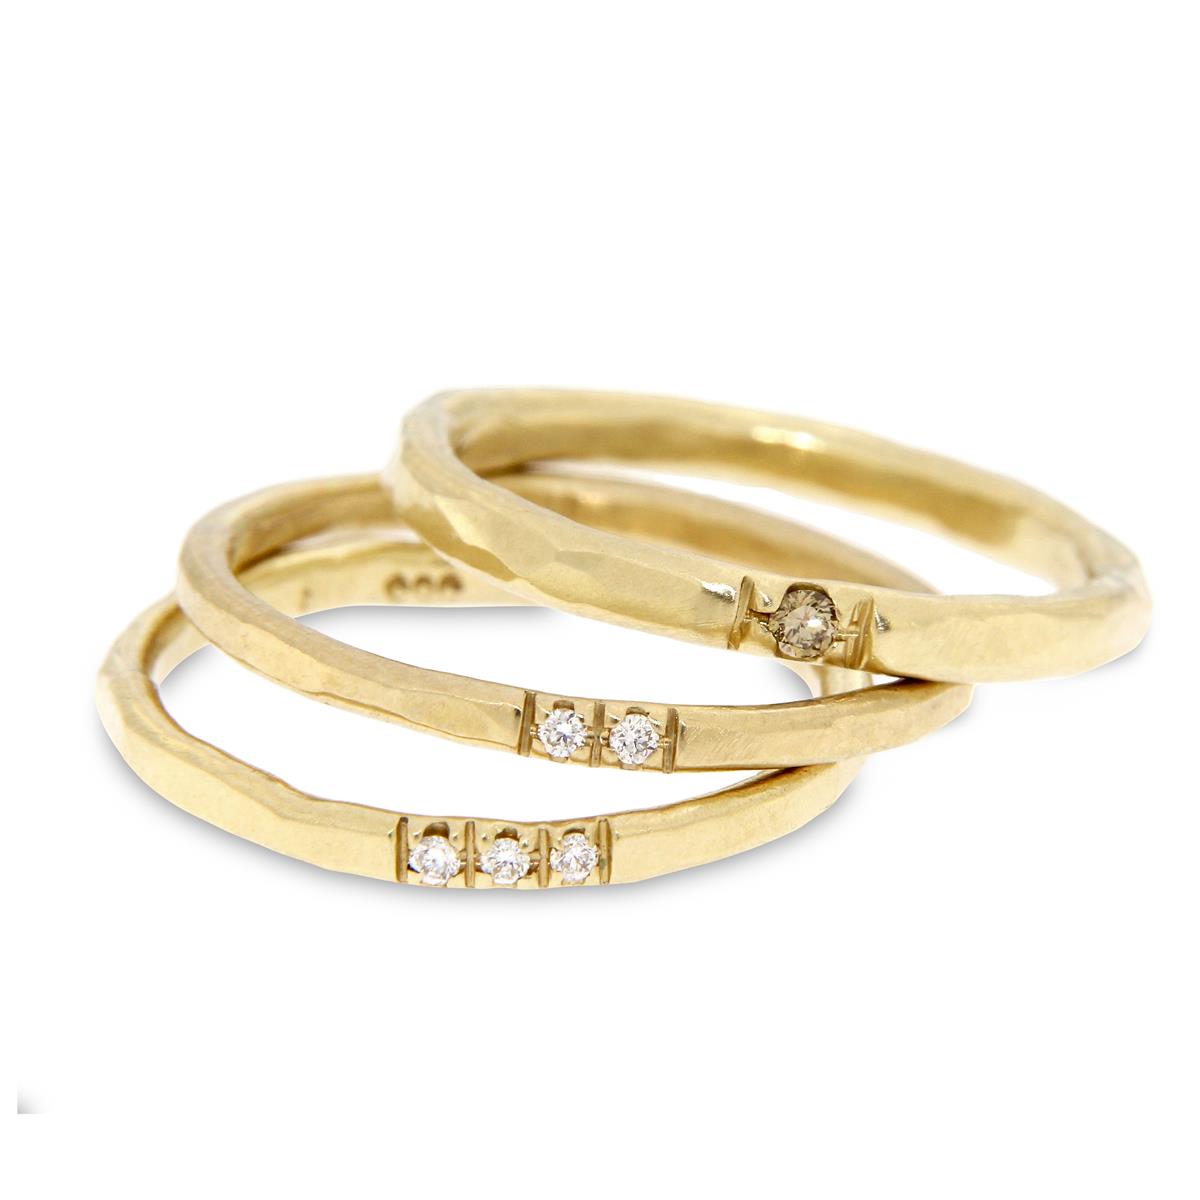 Katie g. Jewellery – Wedding - Ehering - Gehämmerte Gelbgold Ringe mit weißen bzw. braunen Brillanten